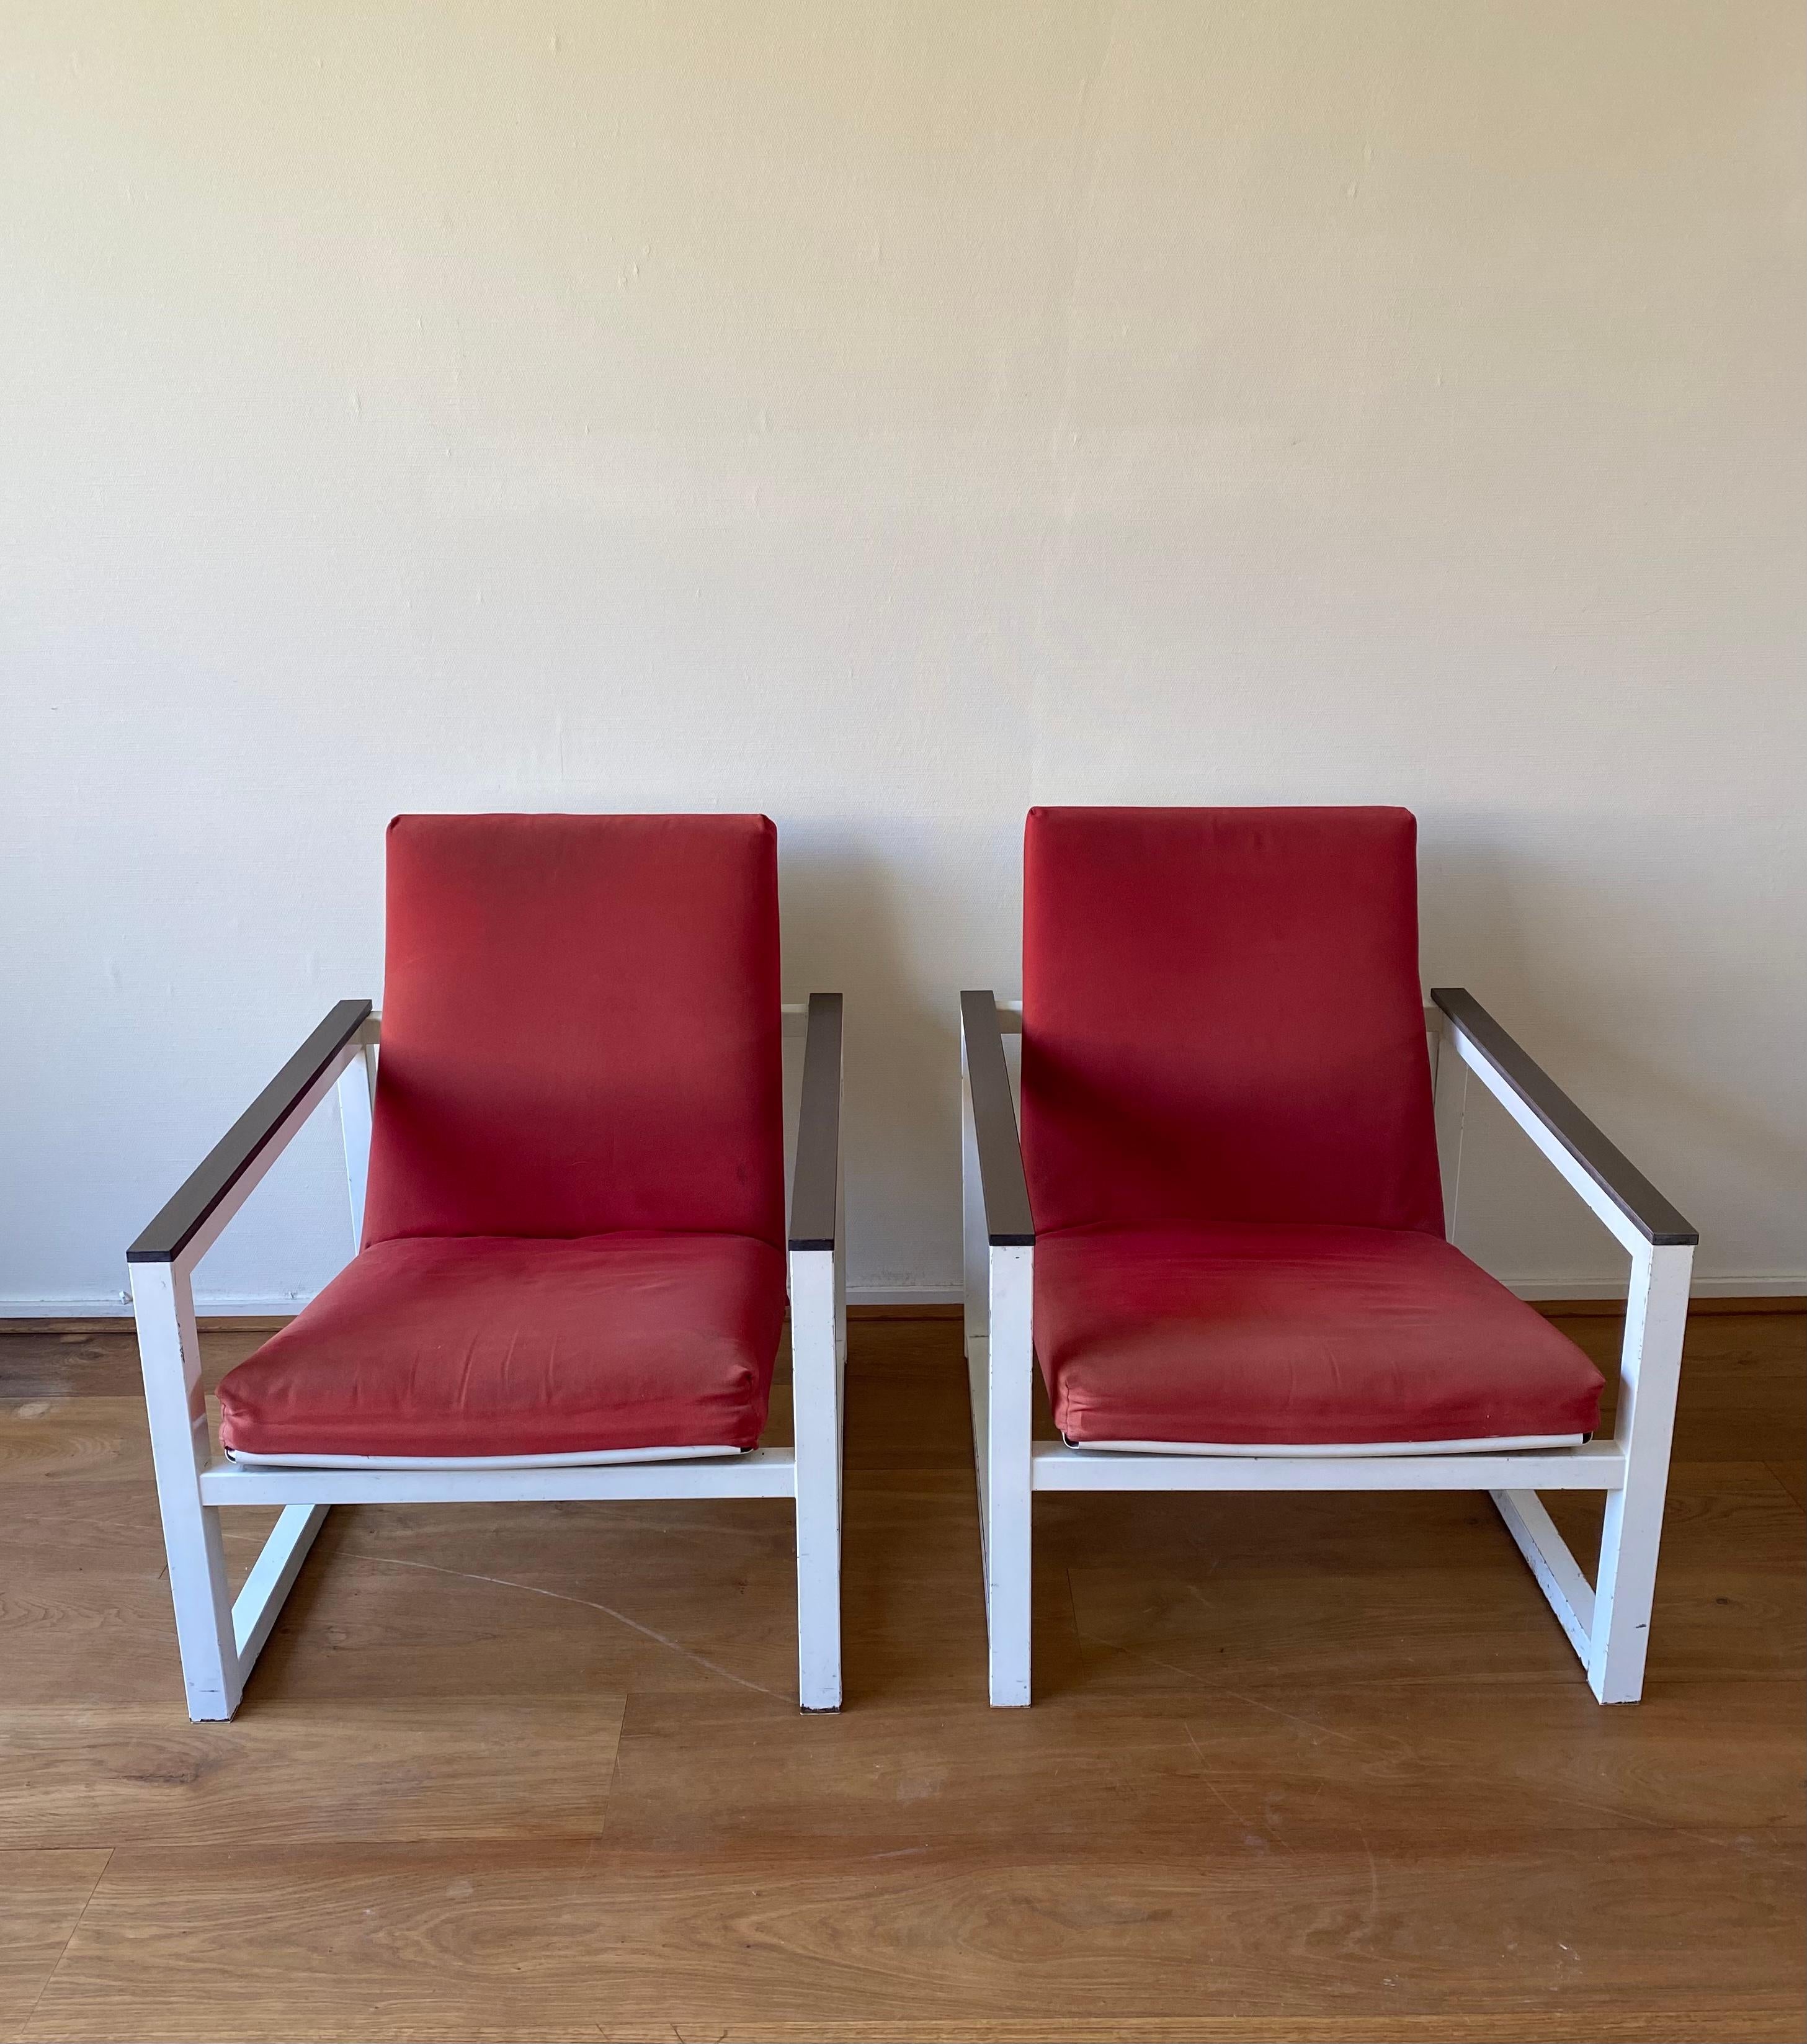 Rare chaise longue conçue par Tjerk Reijenga et Friso Kramer pour Pilastro en 1965. La chaise elle-même a été conçue par Tjerk Reijenga pour Pilastro en 1965 et la partie assise a été dessinée par Friso Kramer pour Ahrend de Cirkel en 1959. Les